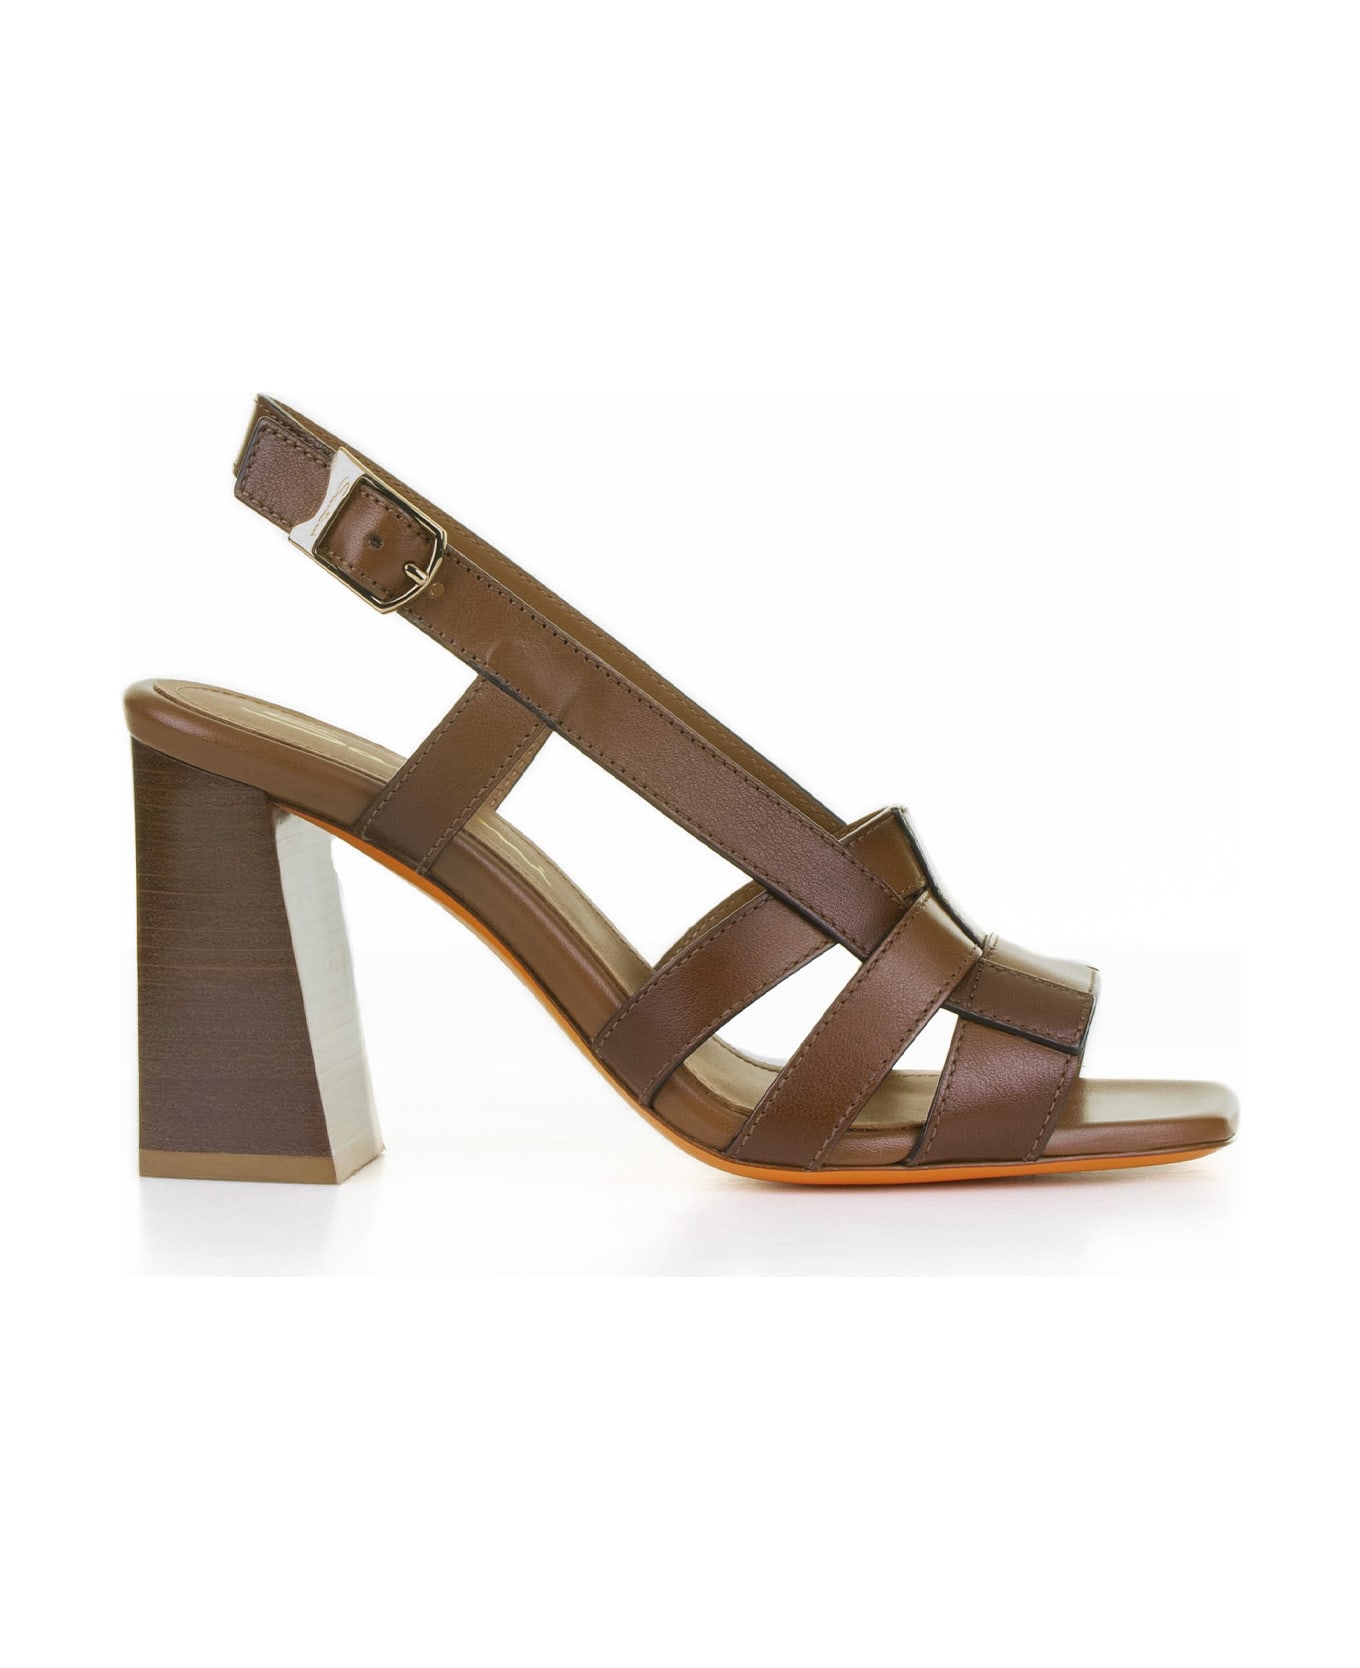 Santoni Brown Leather Sandal With Heel - LIGHT BROWN